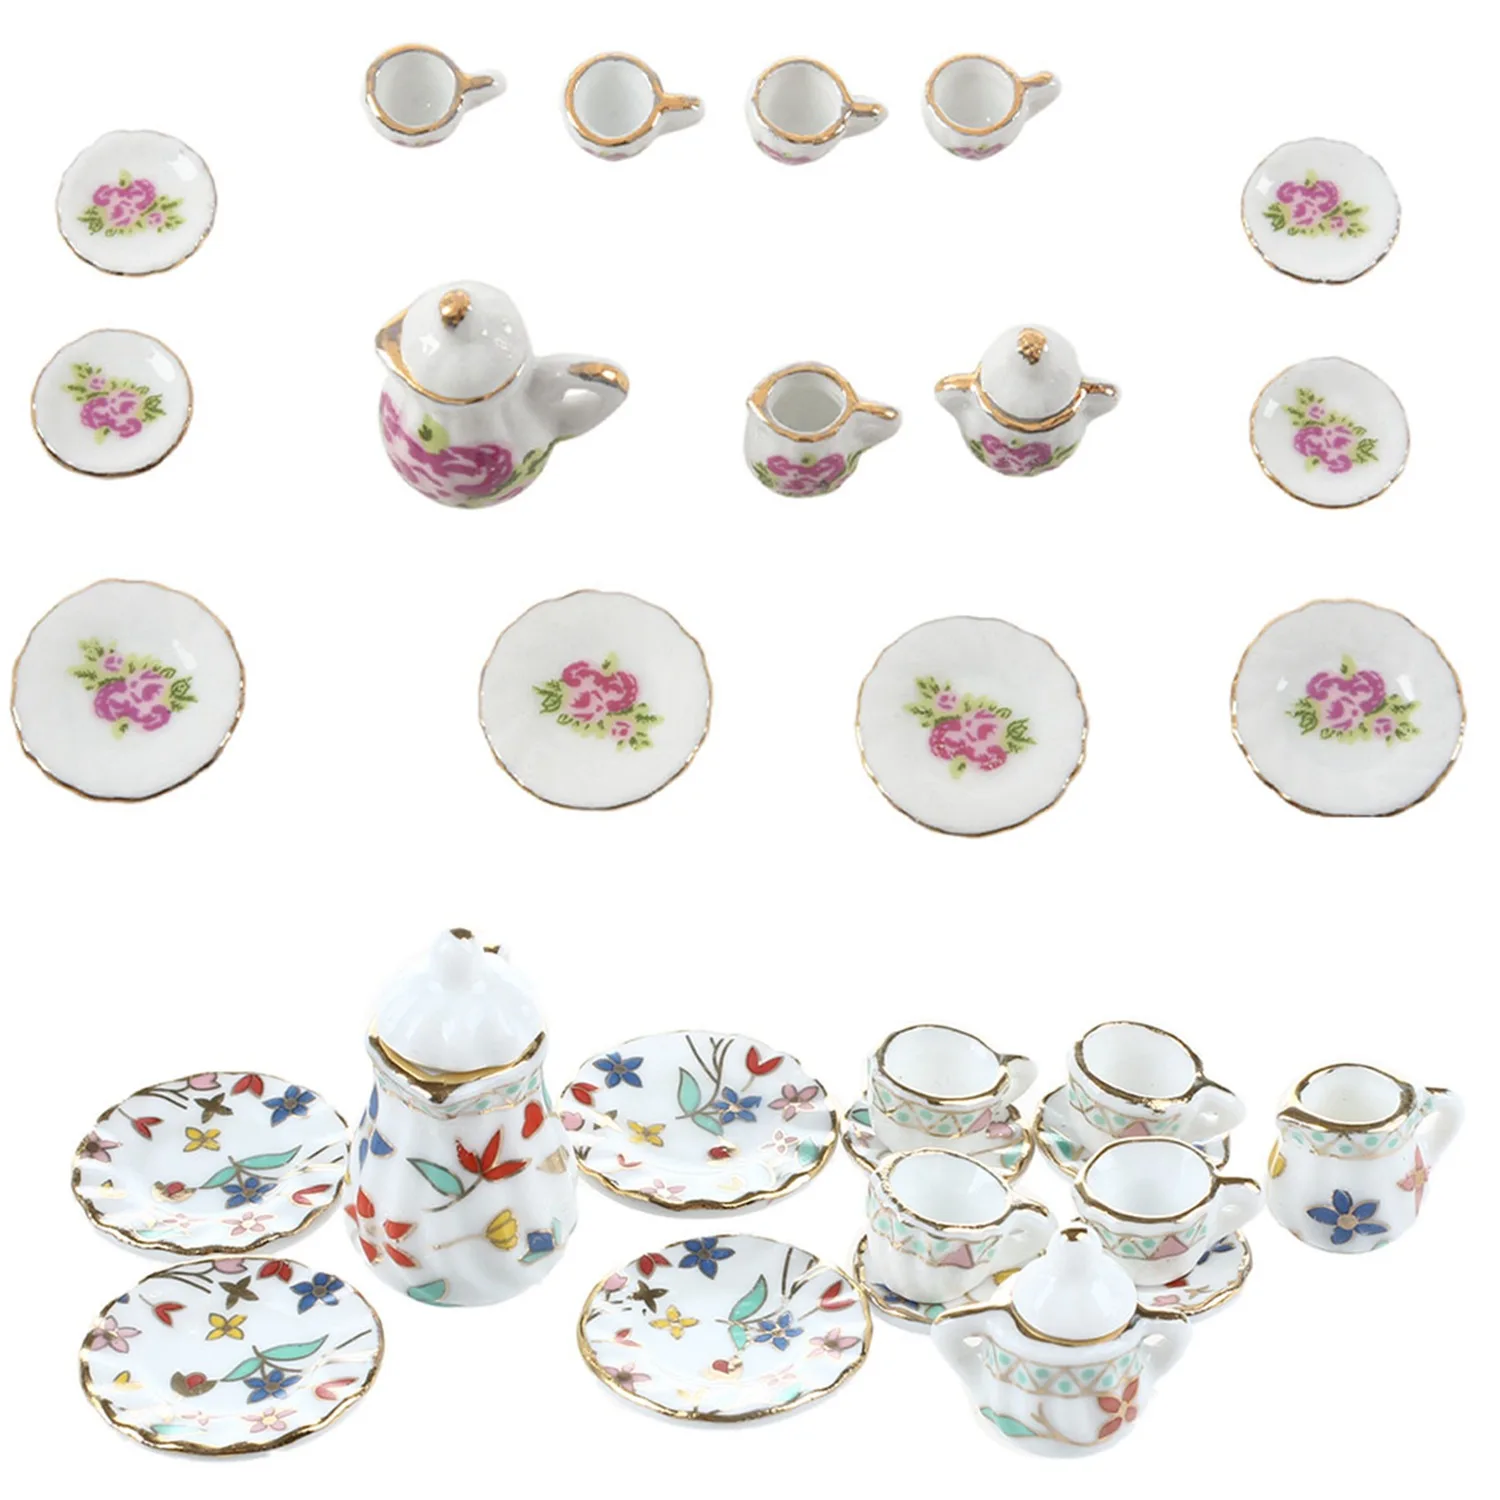 2 комплекта миниатюрной посуды, фарфоровый чайный сервиз - красочный цветочный принт и китайский Изображение 0